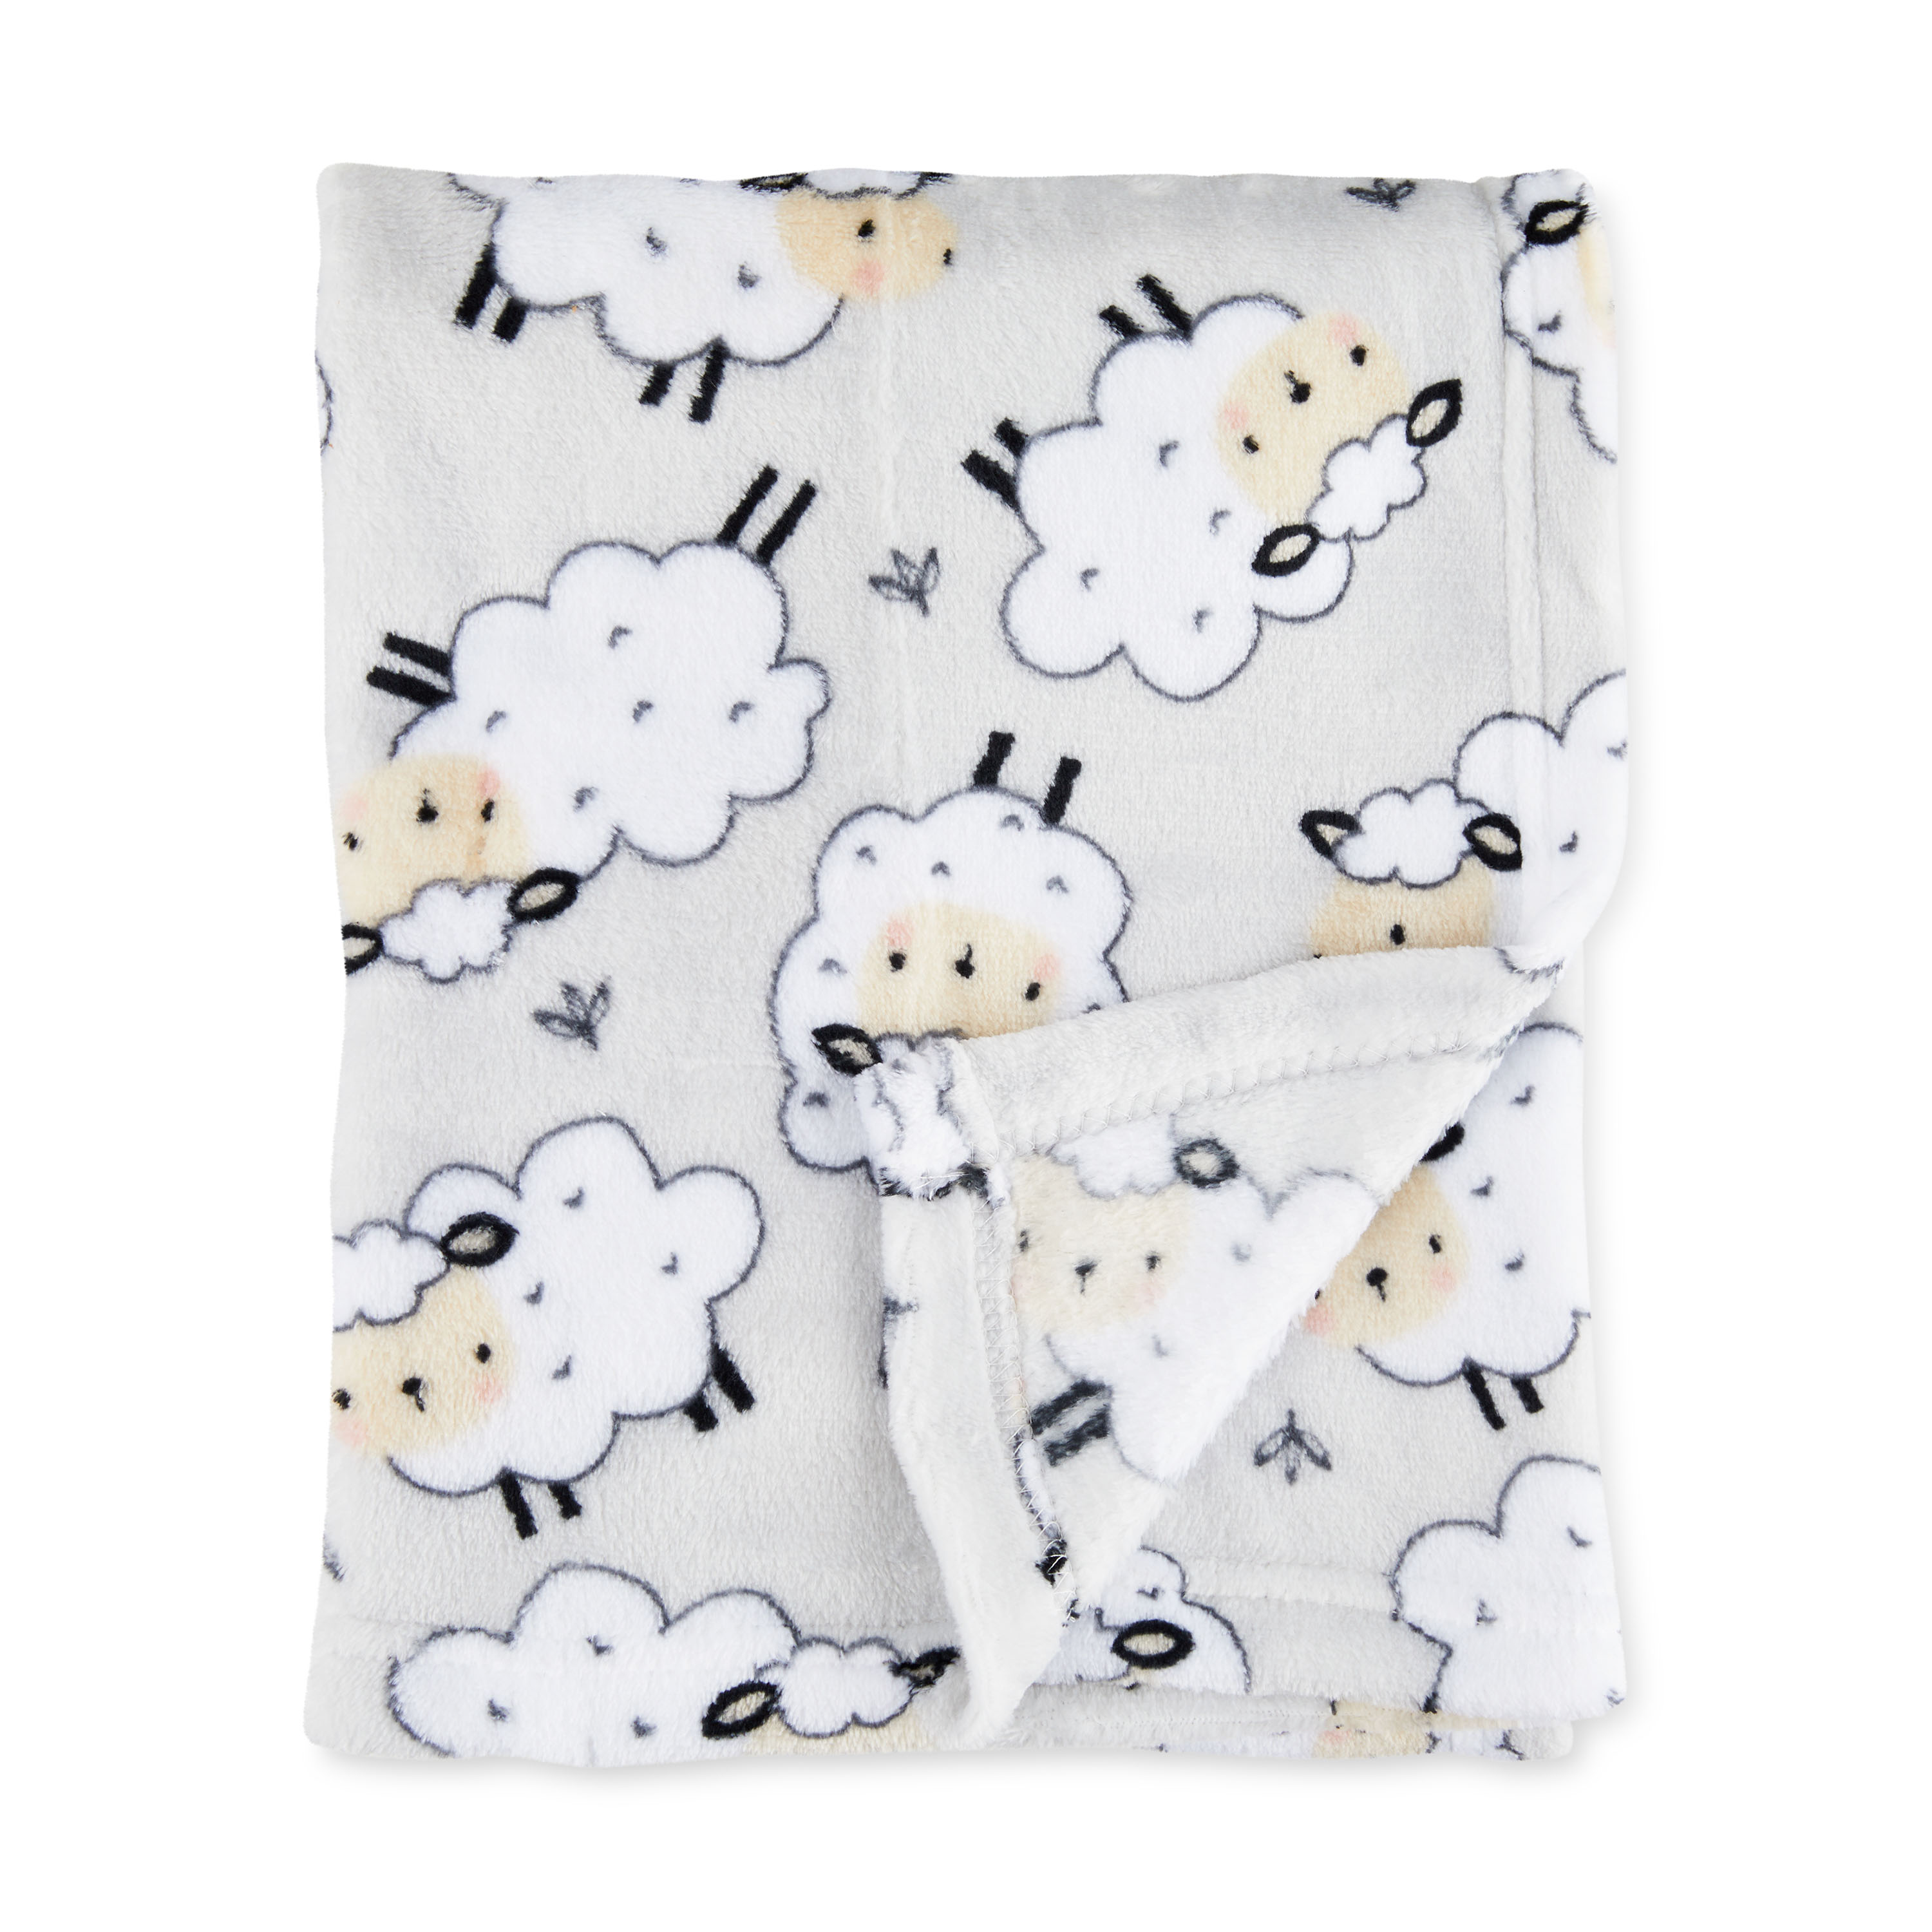 Parent's Choice Grey Sheep Plush Baby Blanket,Infant Unisex, 30" x 36" - image 1 of 8